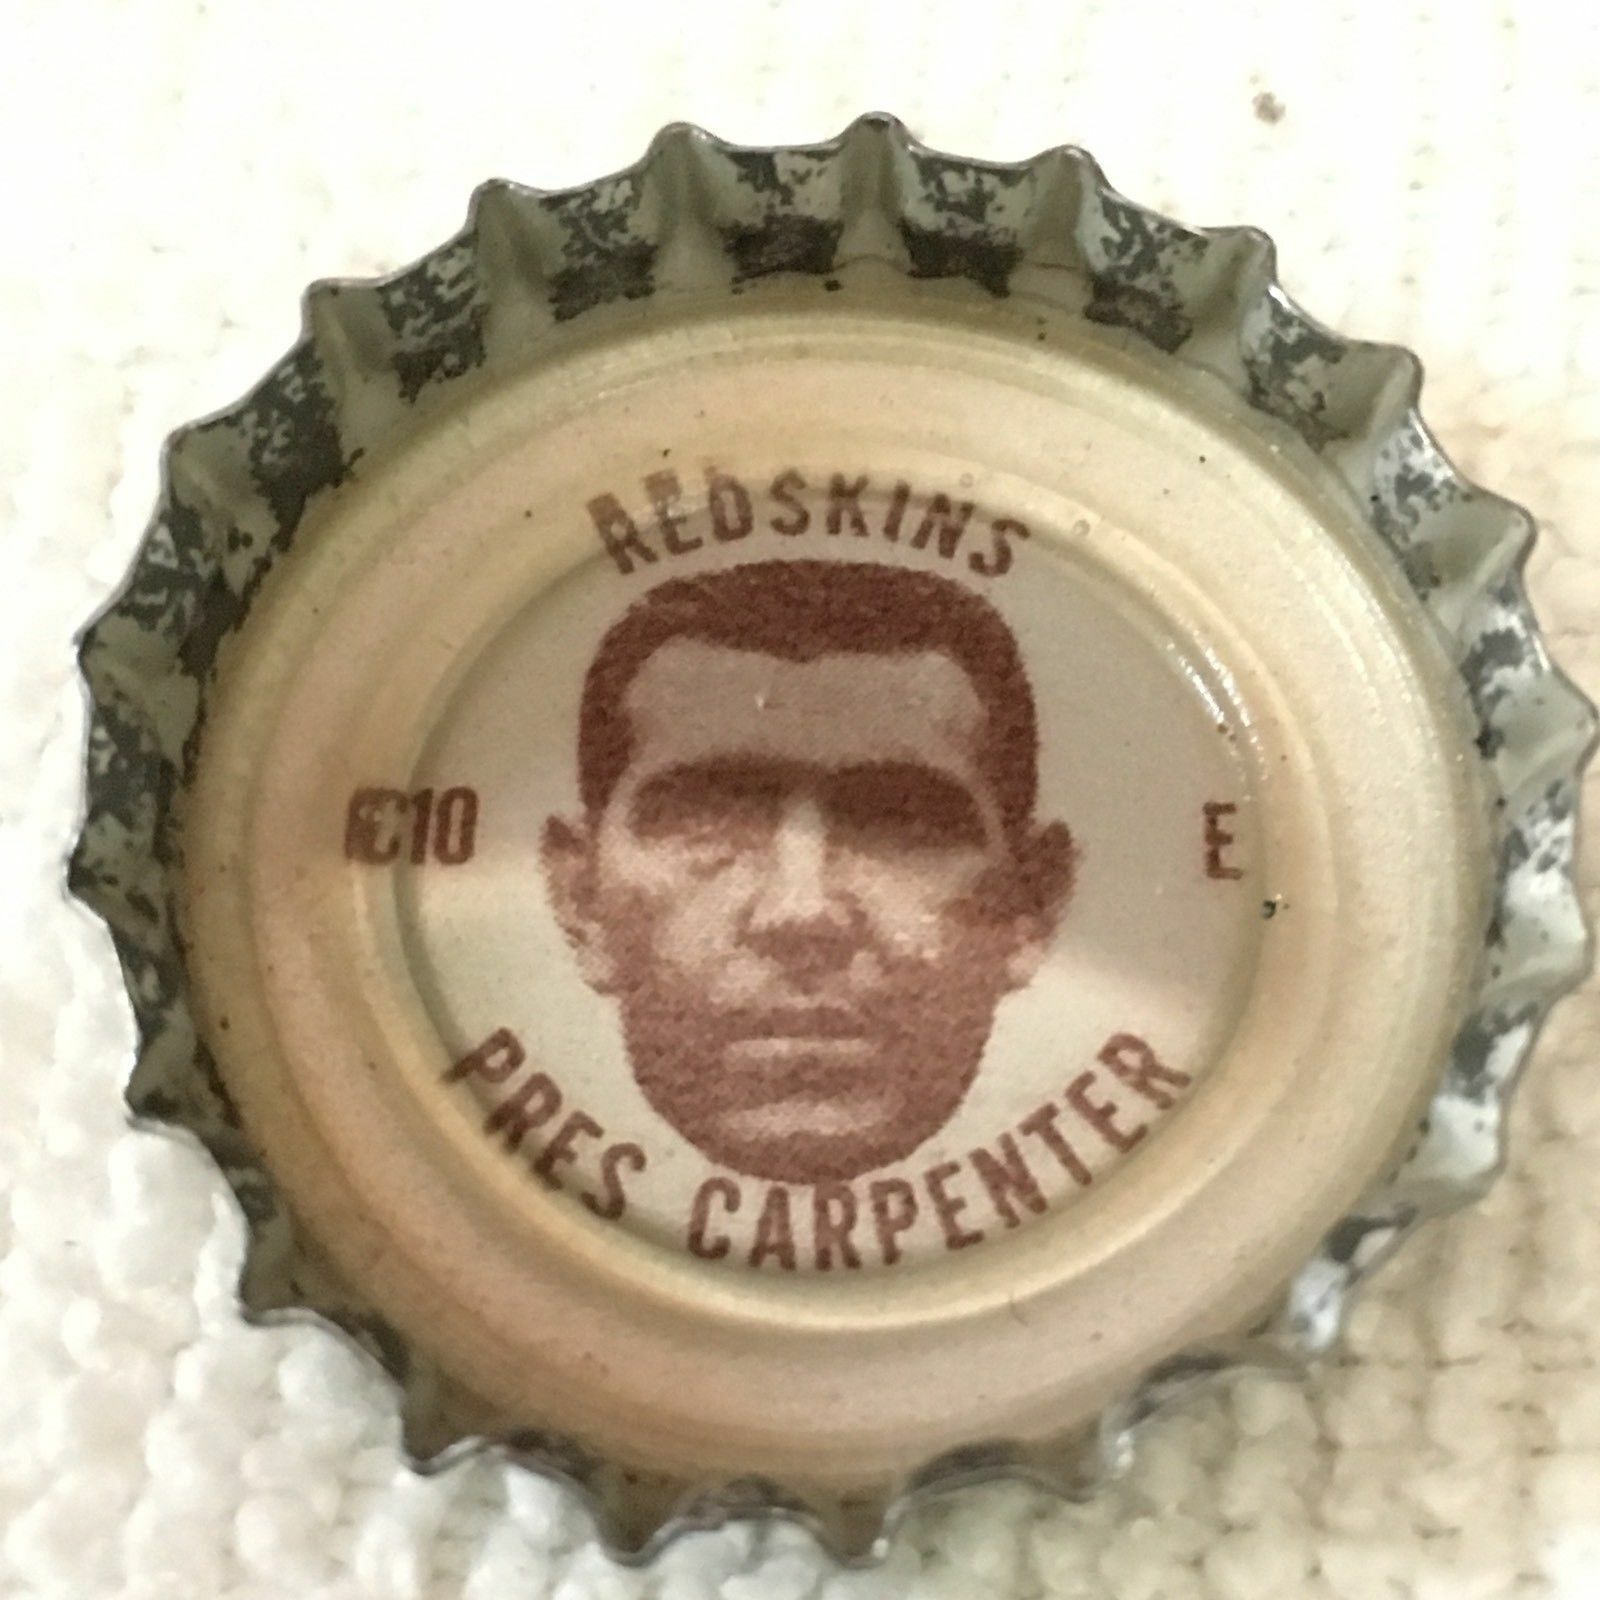 1960s Coca Cola Pres Carpenter C10 Nfl Washington Redskins Bottle Cap Coke